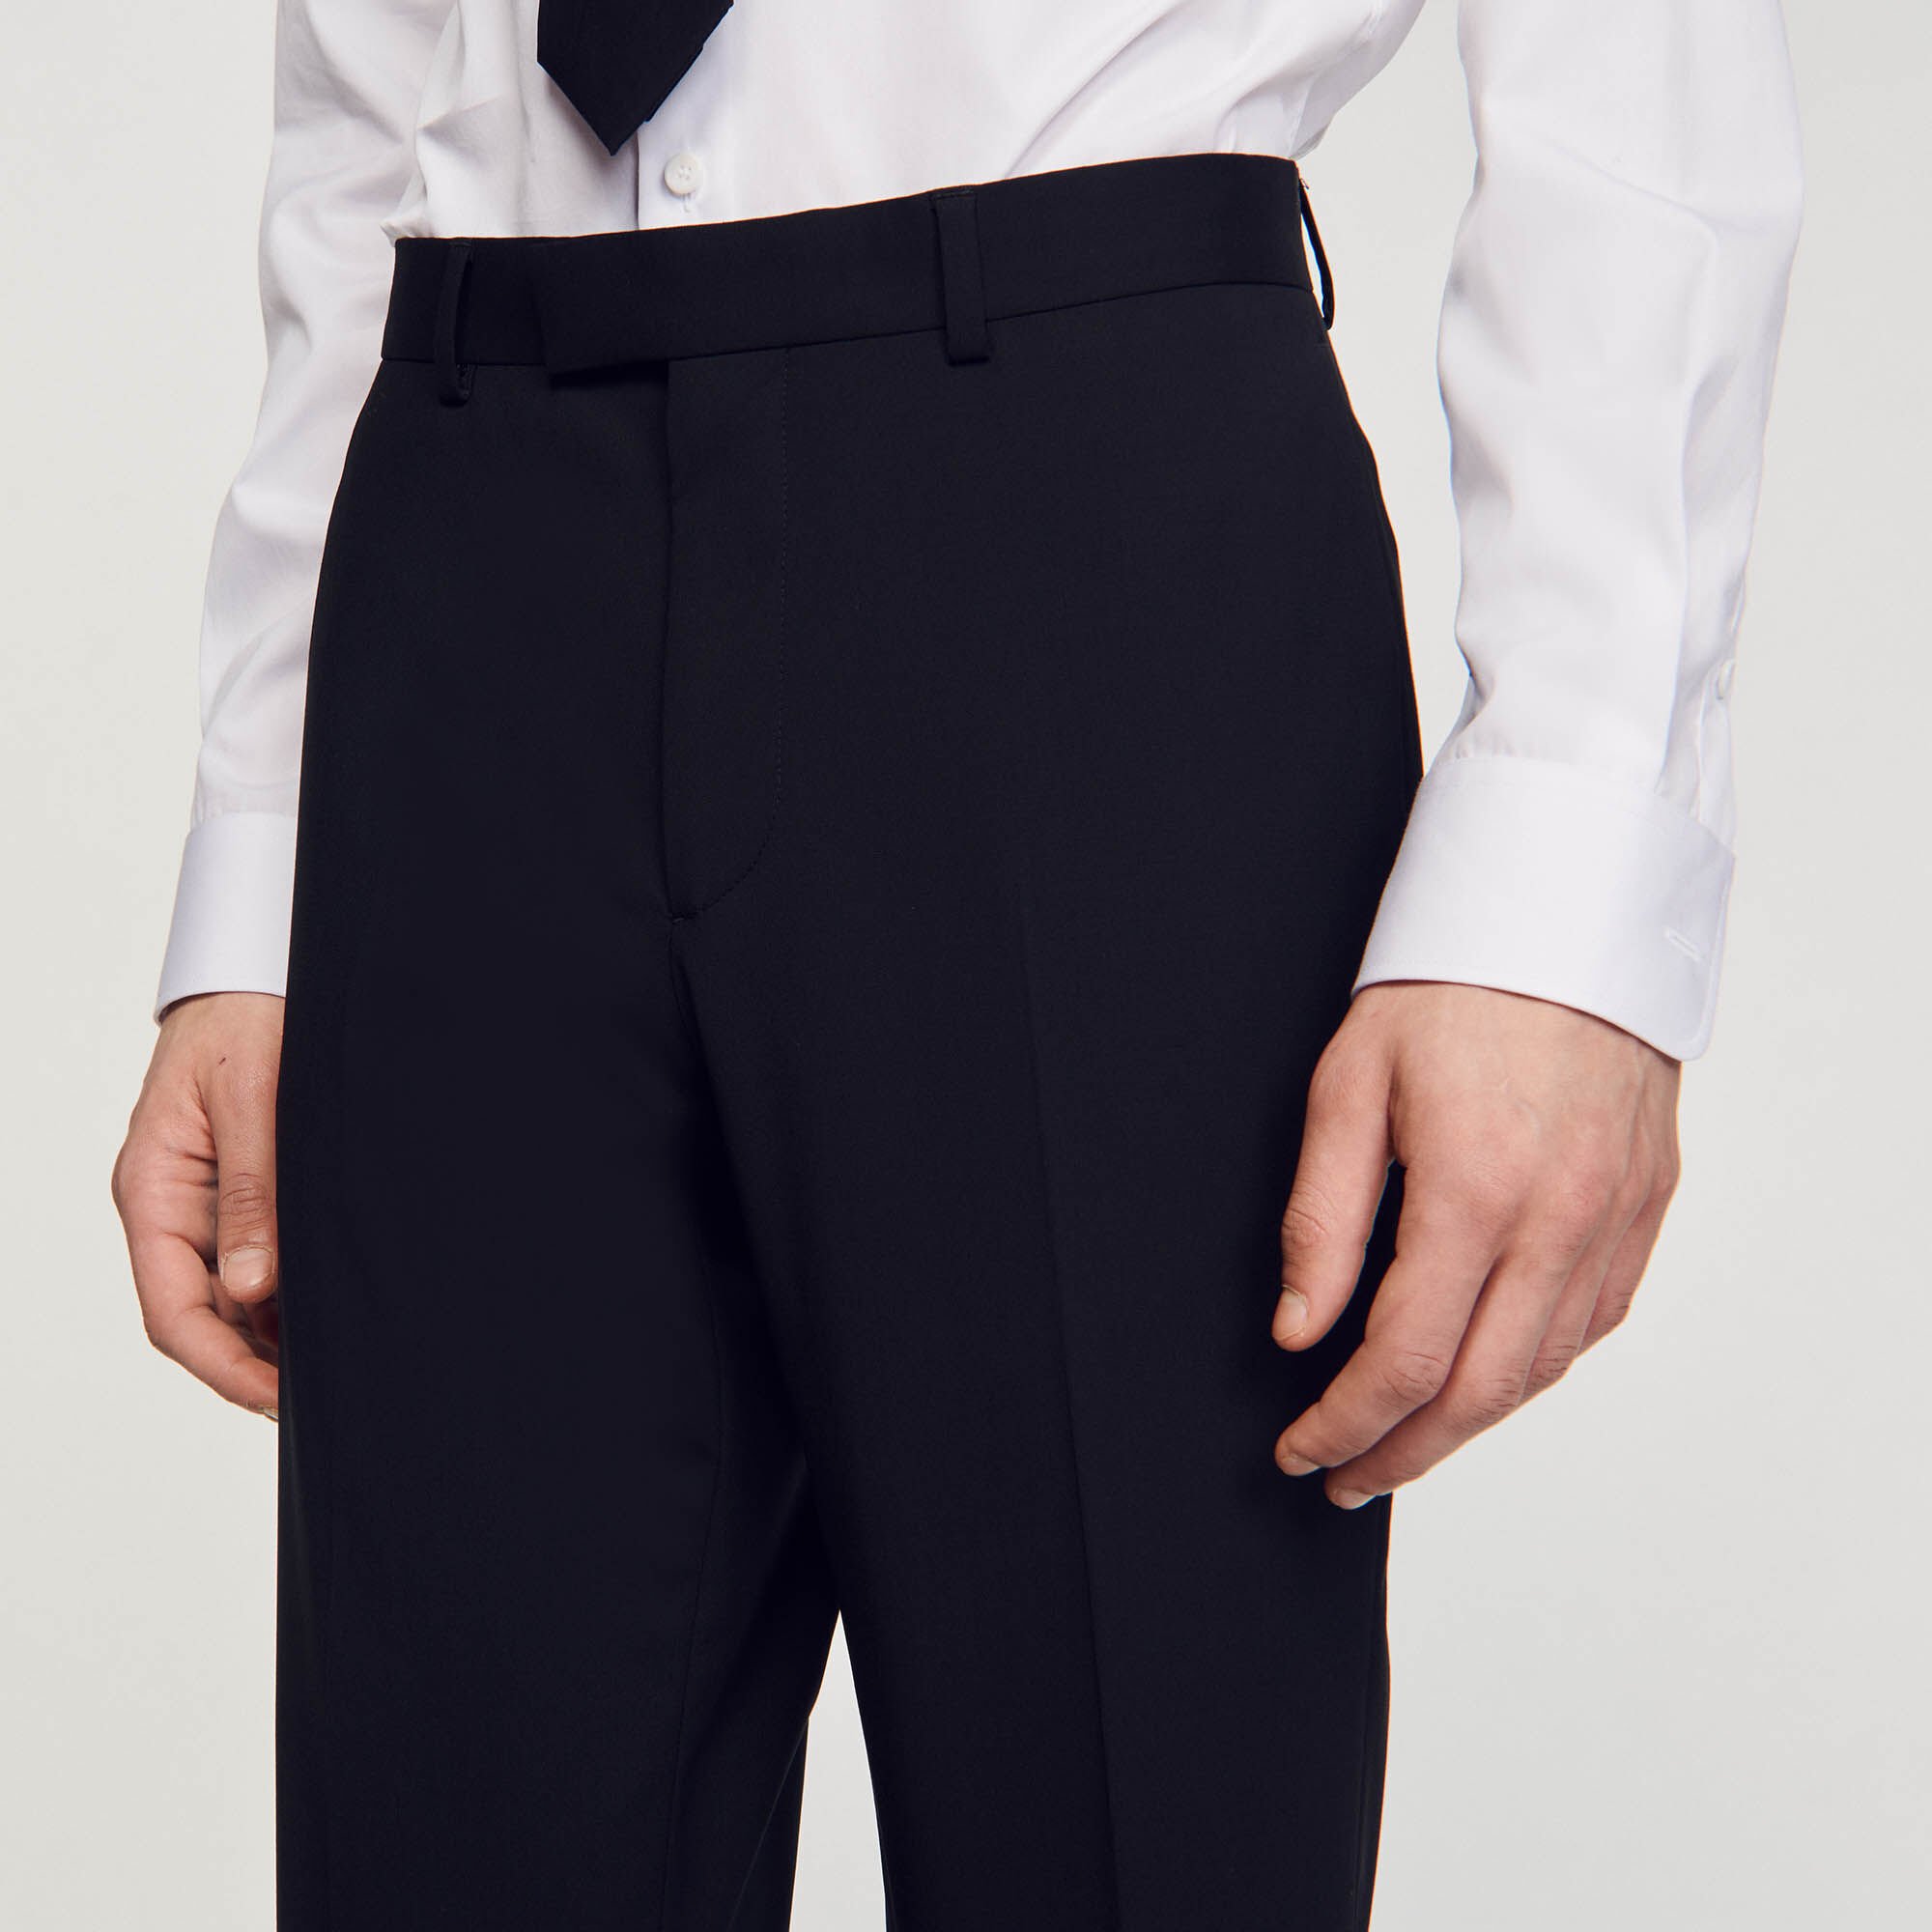 Classic suit pants Black / Gray | Sandro Paris